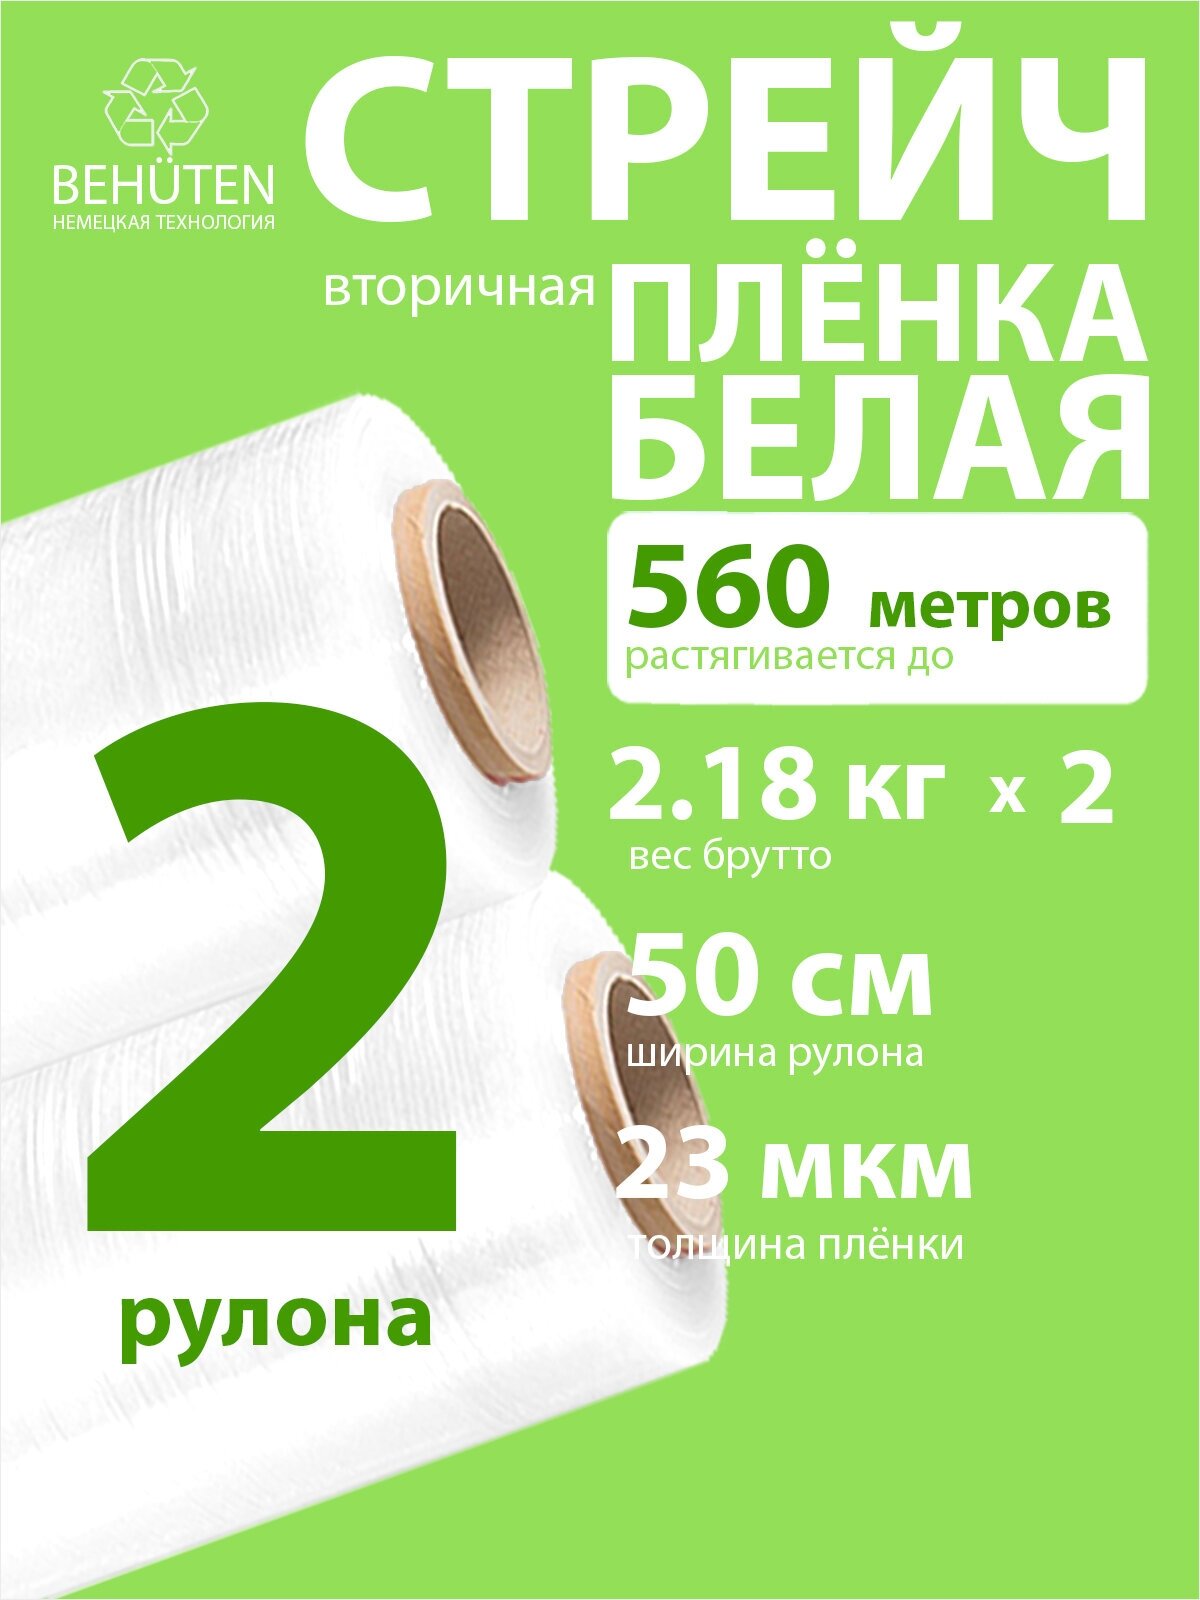 Стрейч пленка BEHUTEN упаковочная белая 50 см 23 мкм 2,18 кг вторичная, 2 рулона